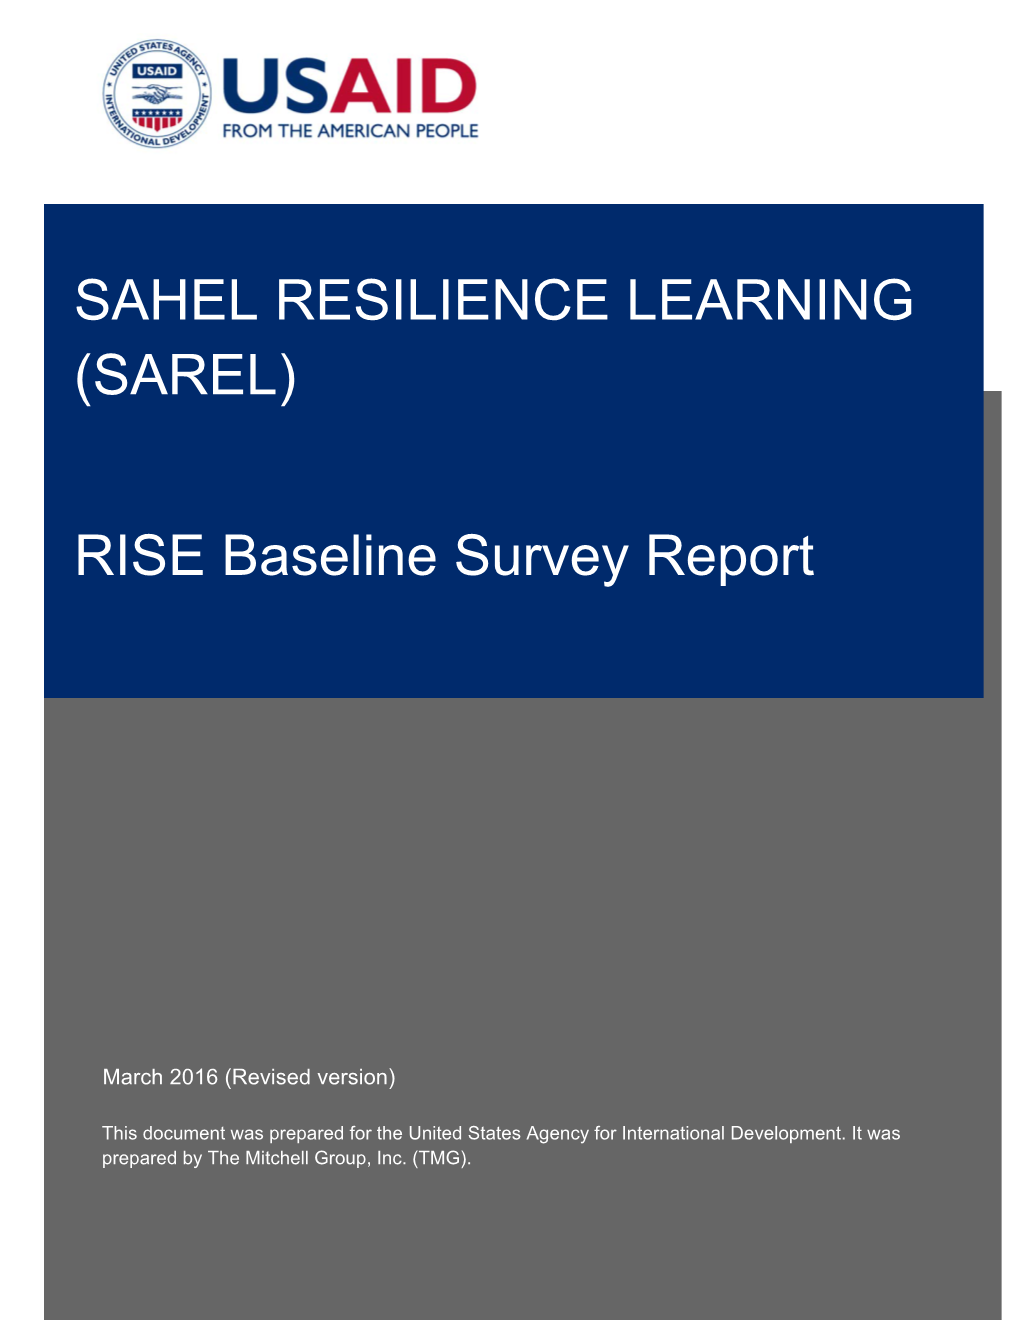 Rise Baseline Survey Report